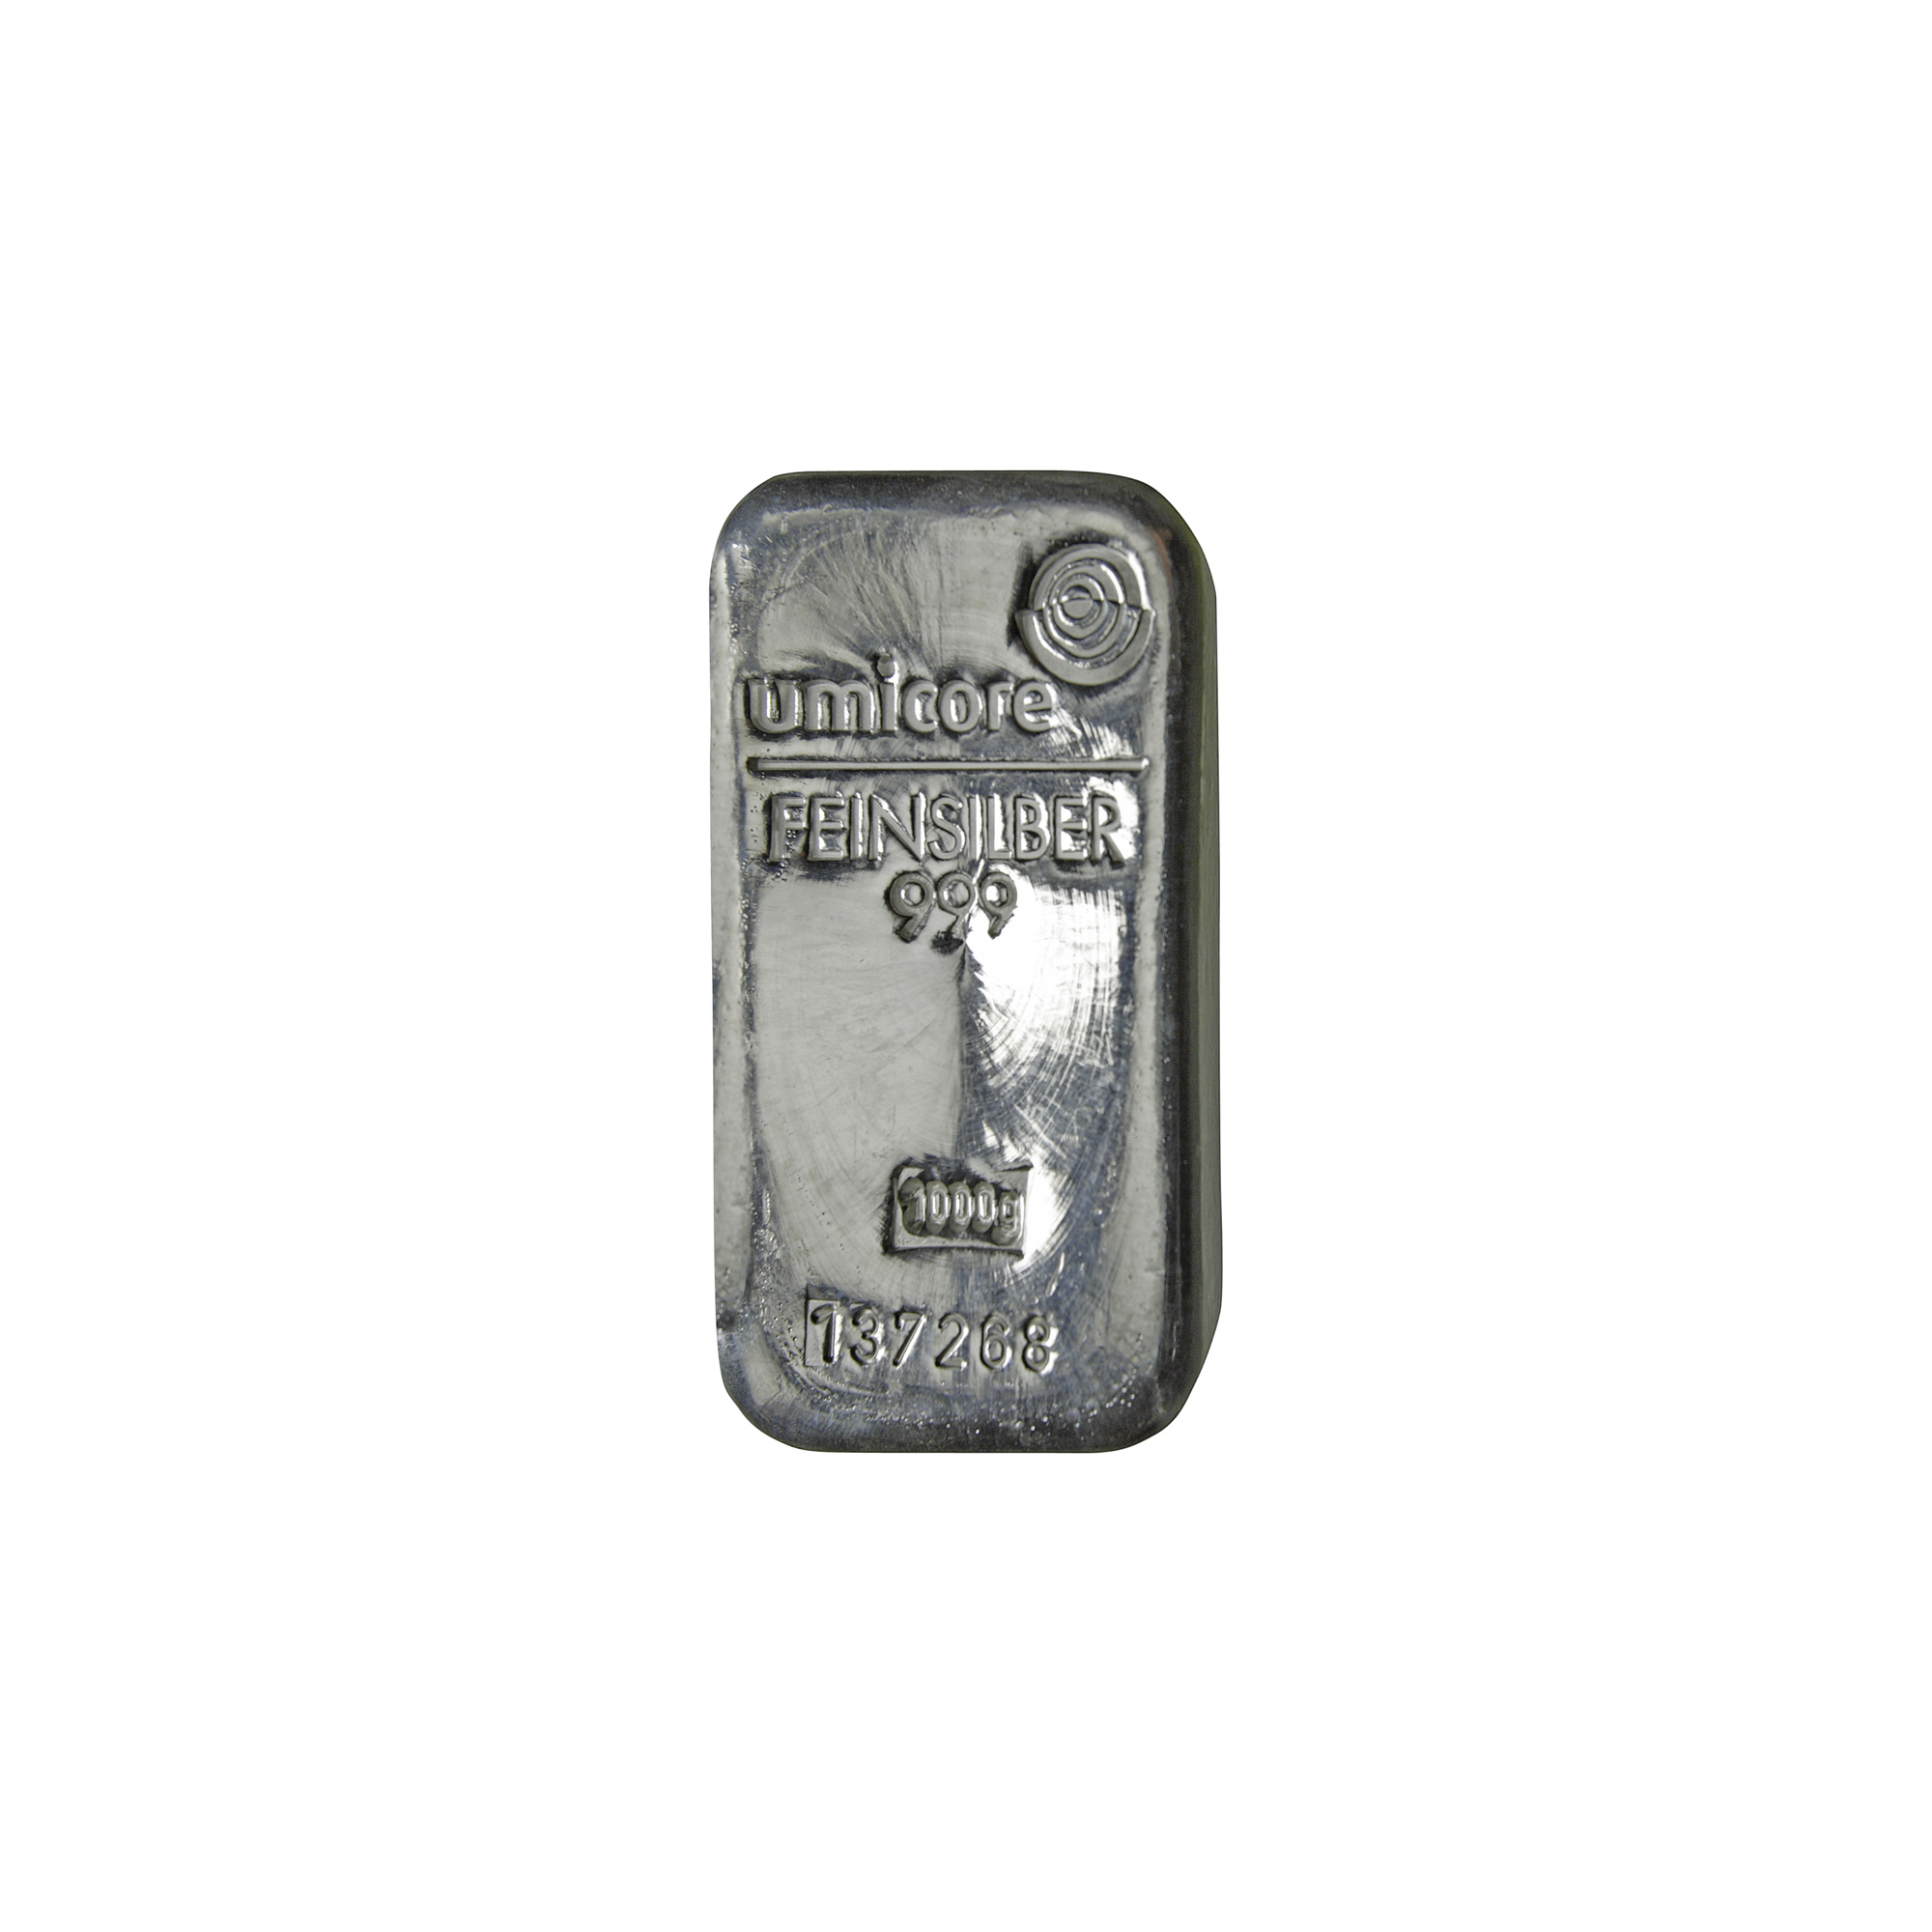 Gewoon doen Variant mond 1 kilo zilver- Aankoop en verkoop zilverprijs - beleggen in zilver